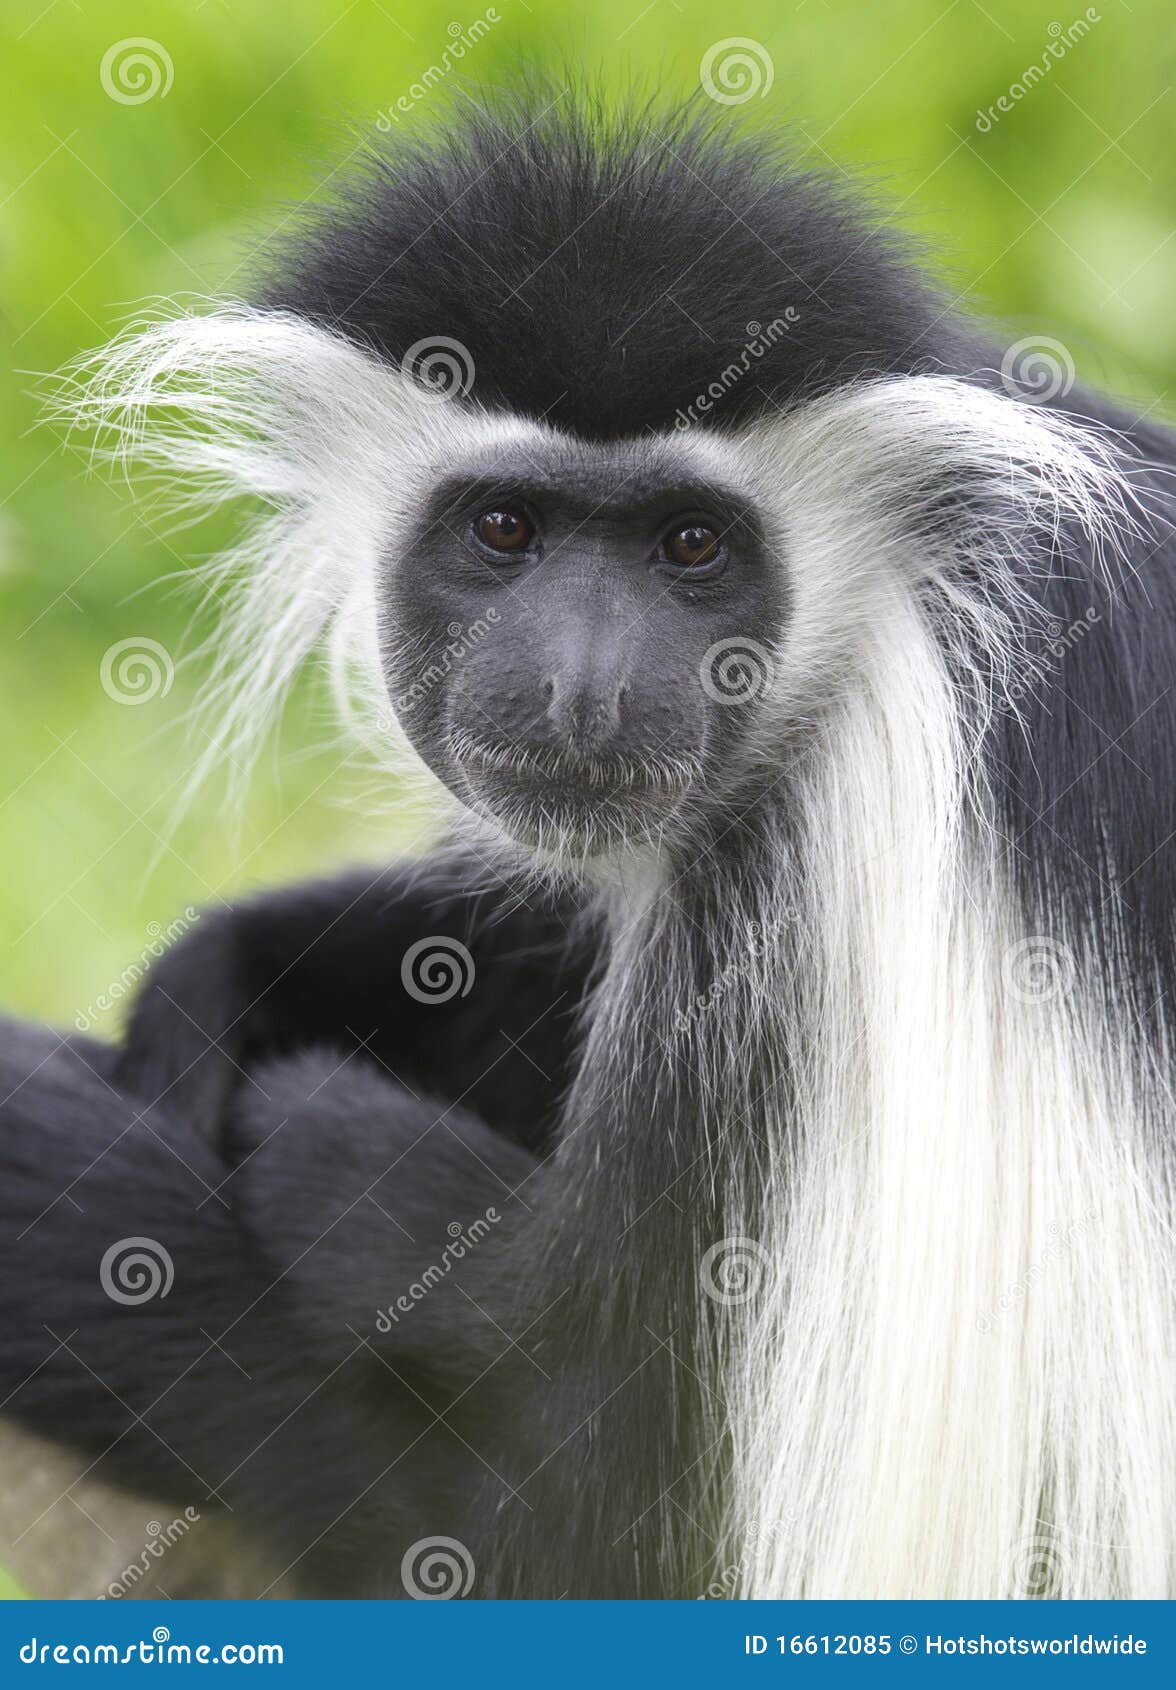 black and white colobus monkey, kenya, africa